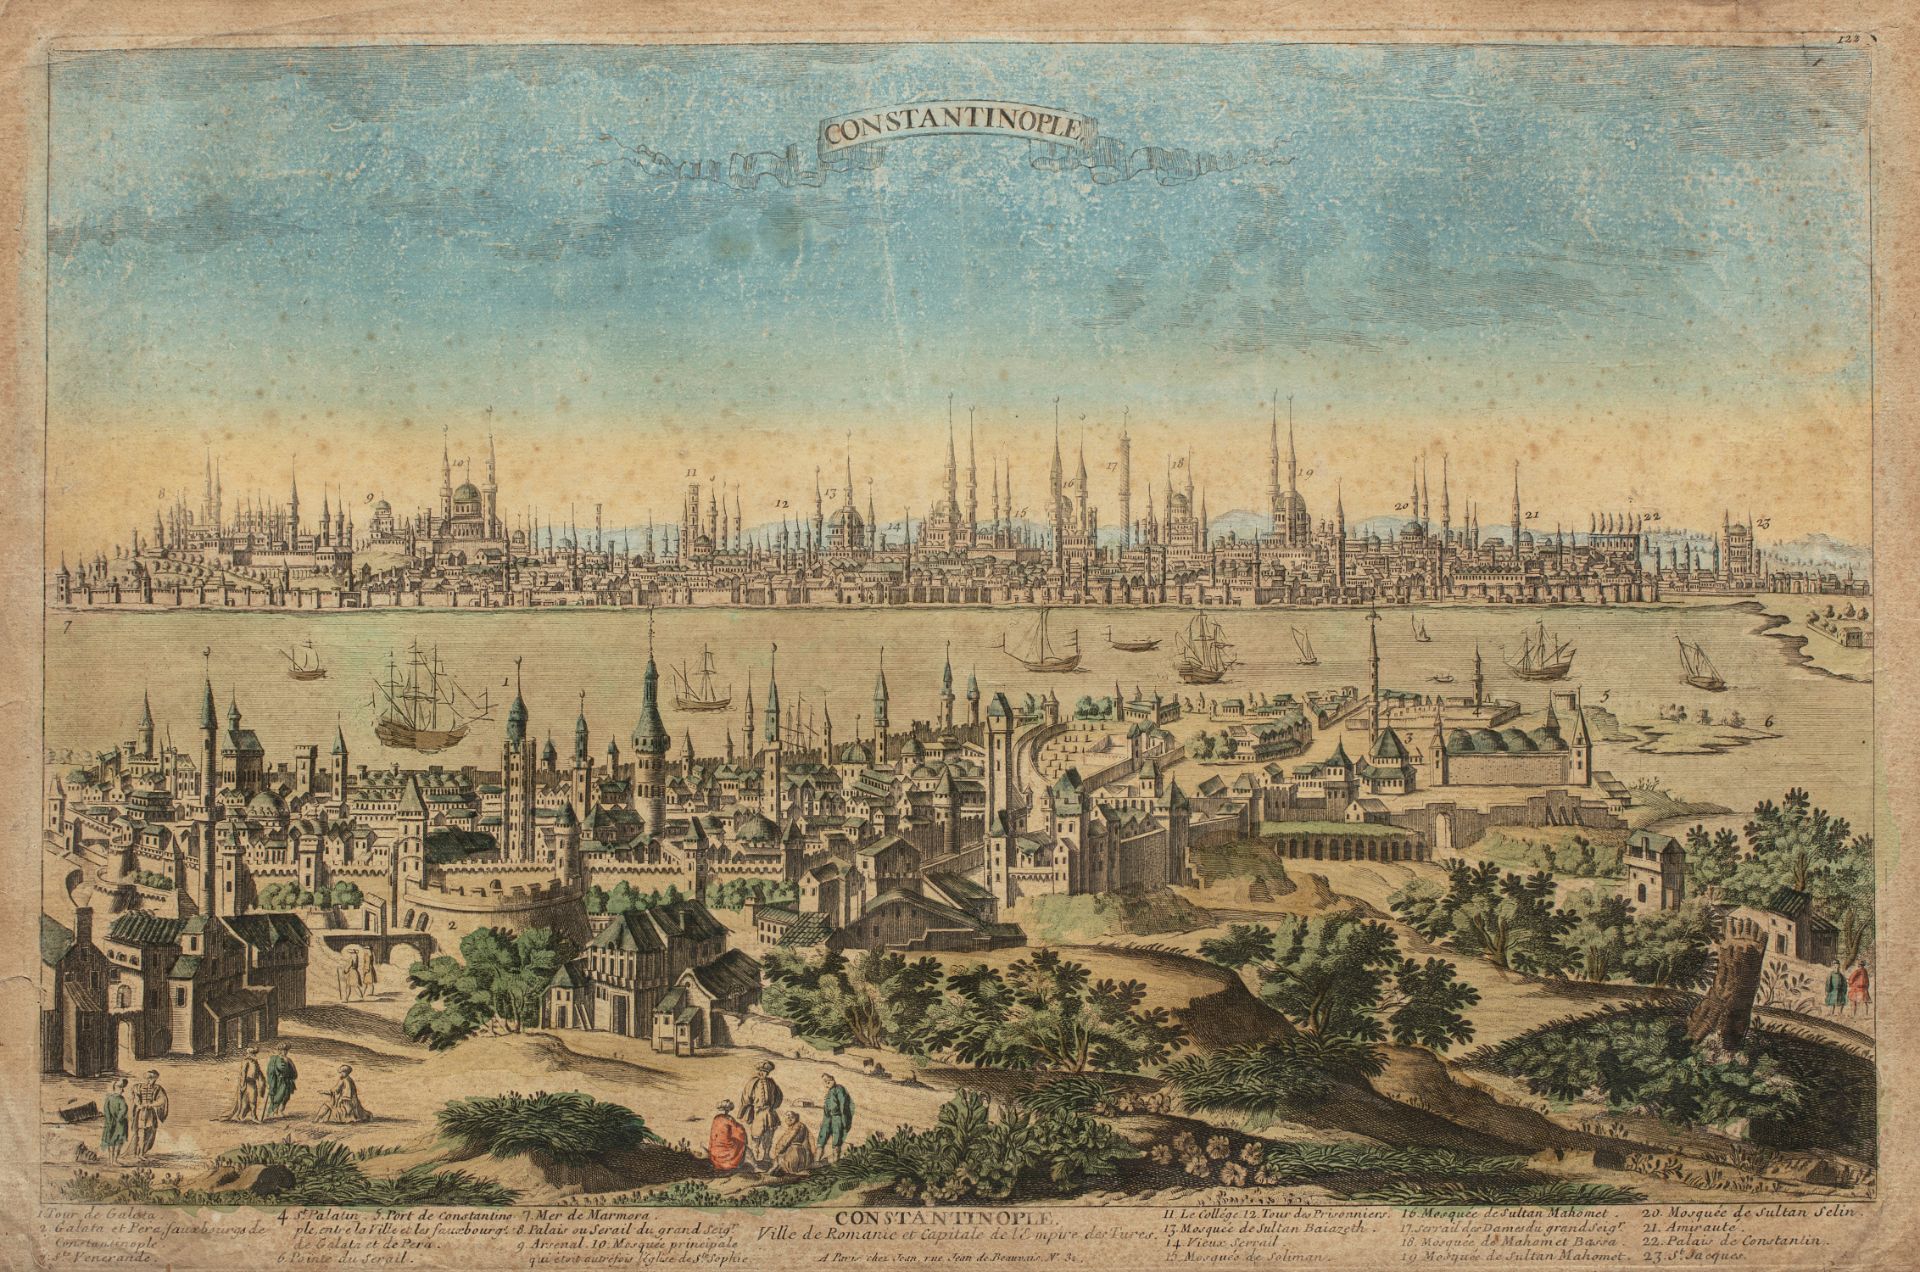 Constantinople, Ville de Romanie et capitale de l’Empire Turc - Ed. Chez Jean, rue [...]